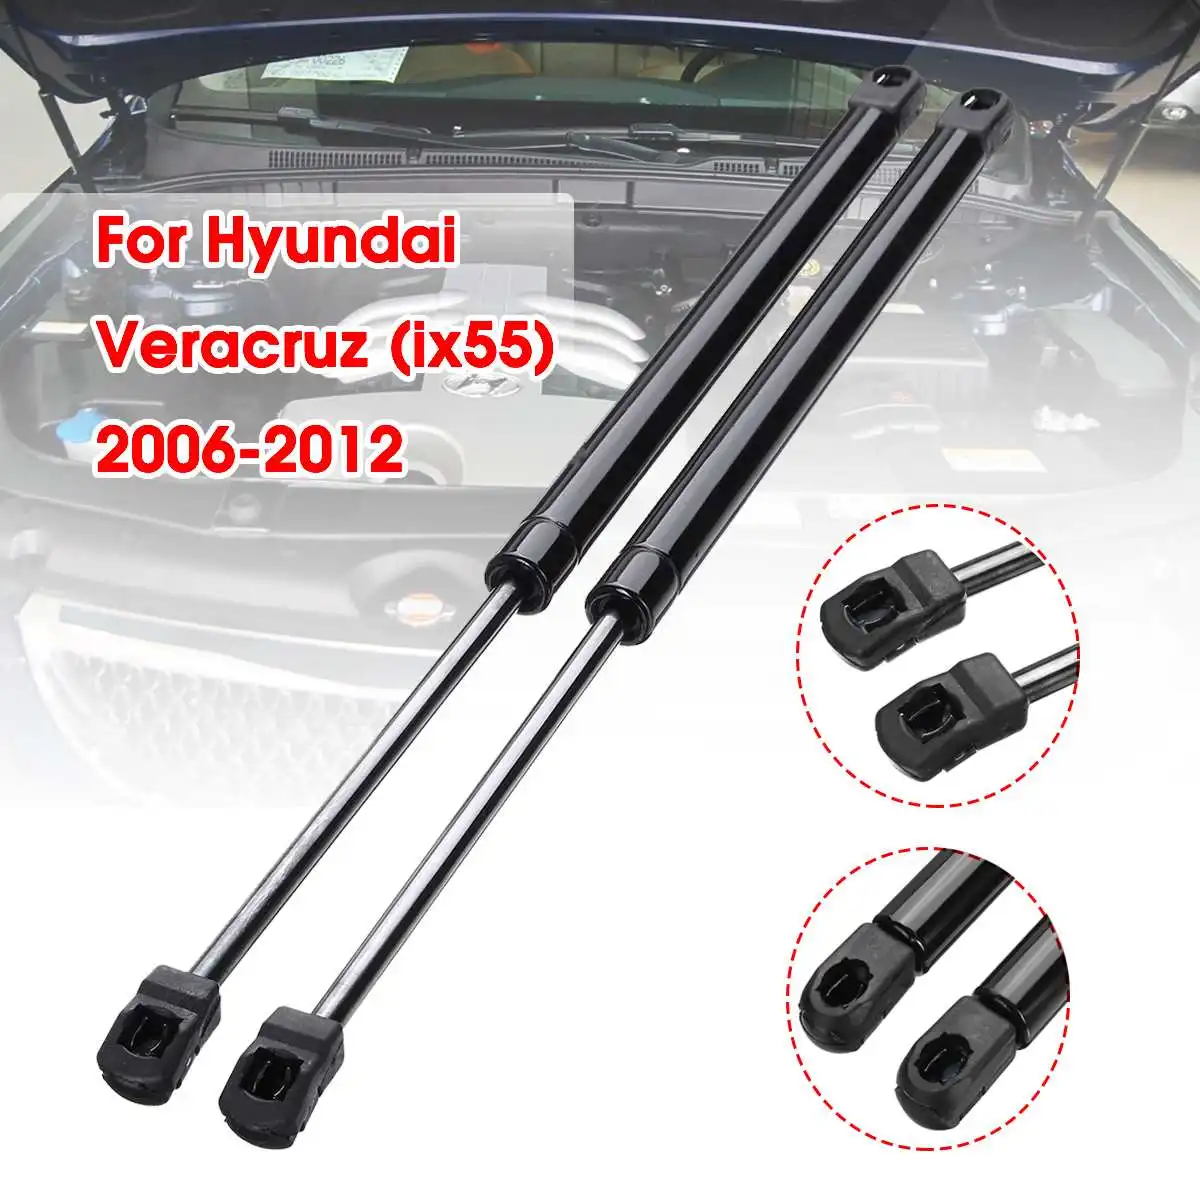 

2pcs/set Car Front Bonnet Hood Modify Gas Struts Lift Support Shock Damper Bars For Hyundai Veracruz ix55 2006 - 2012